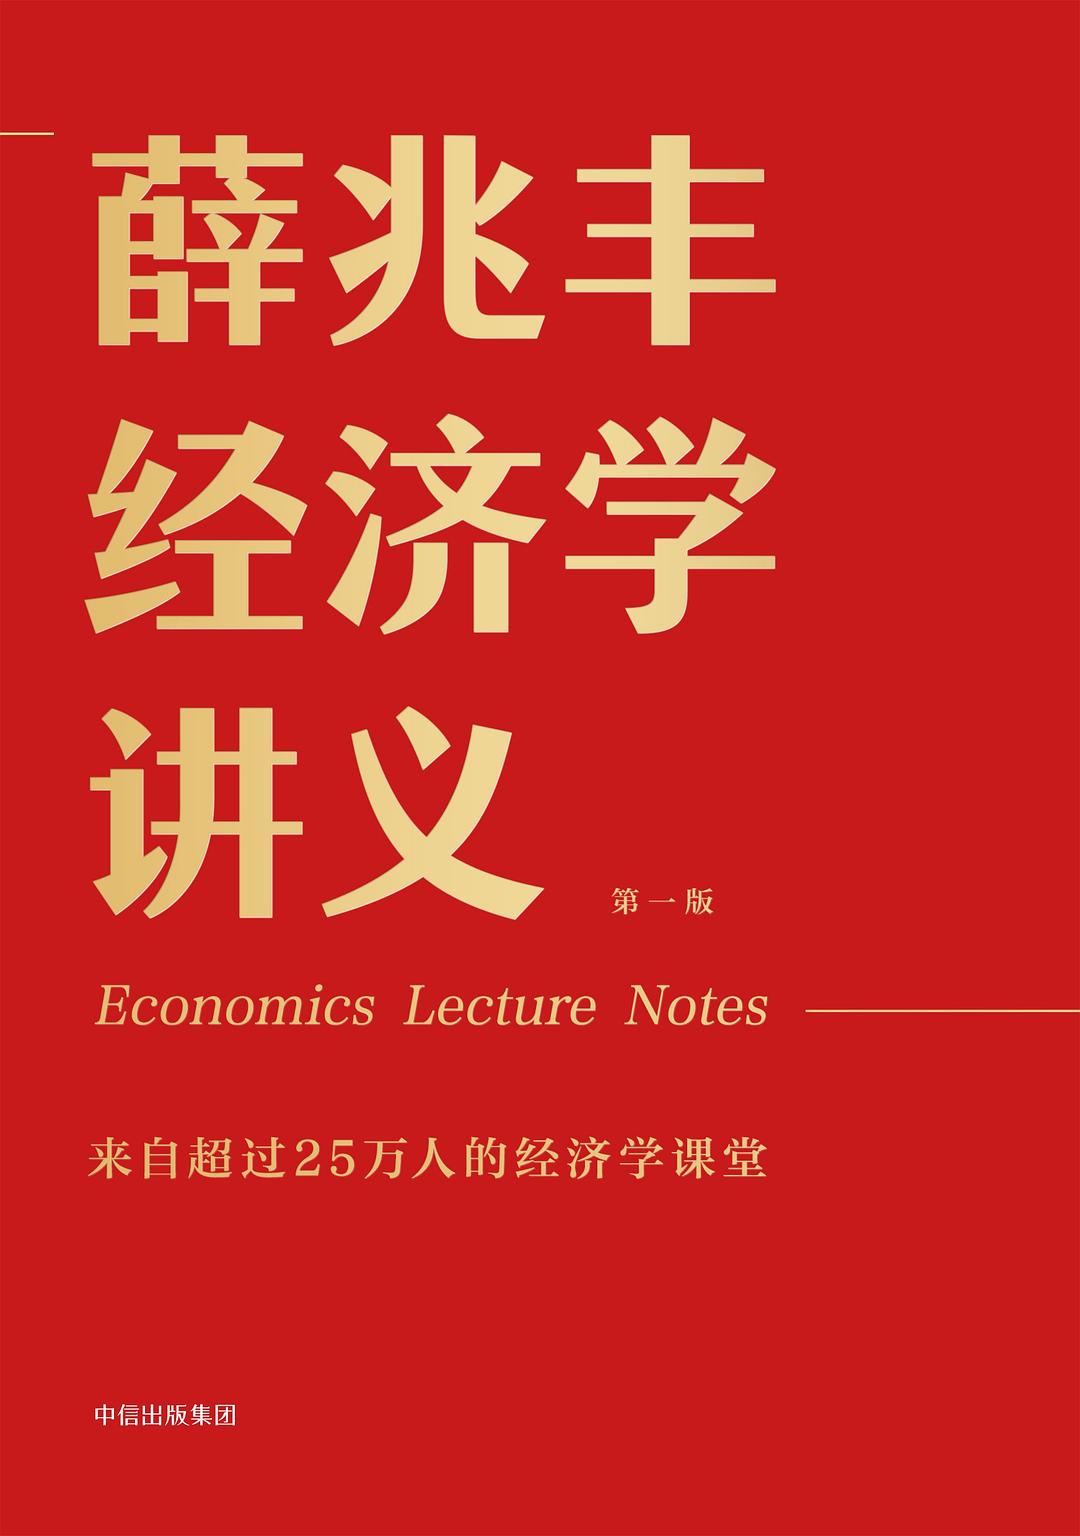 薛兆丰经济学讲义 : 来自超过25万人的经济学课堂